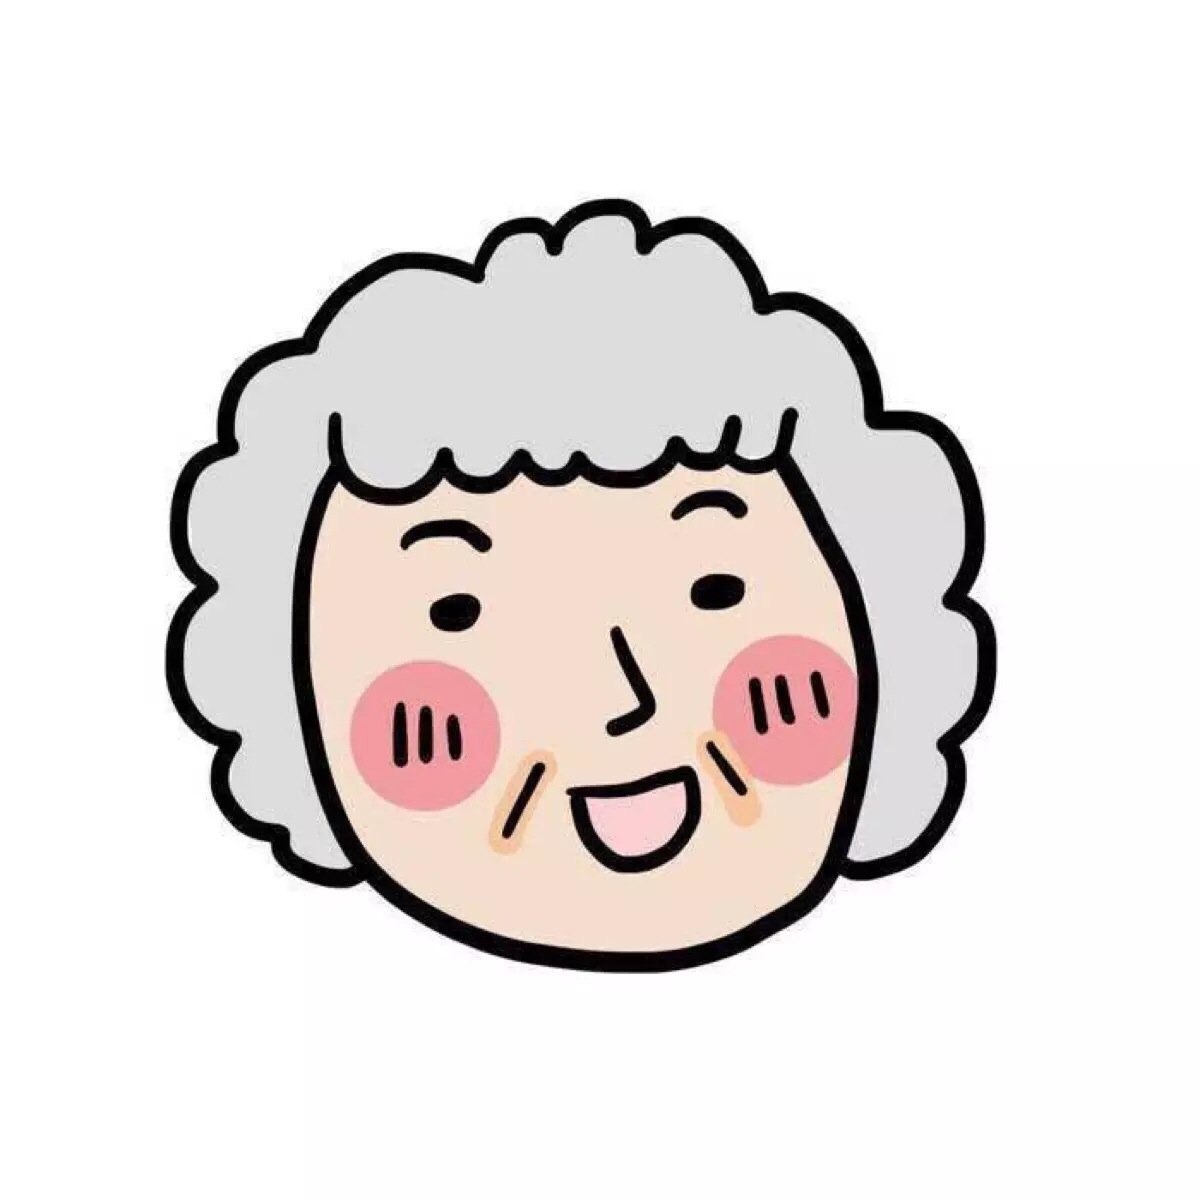 可爱的老奶奶头像真人-可爱头像-爱聚微信qq空间大杂烩